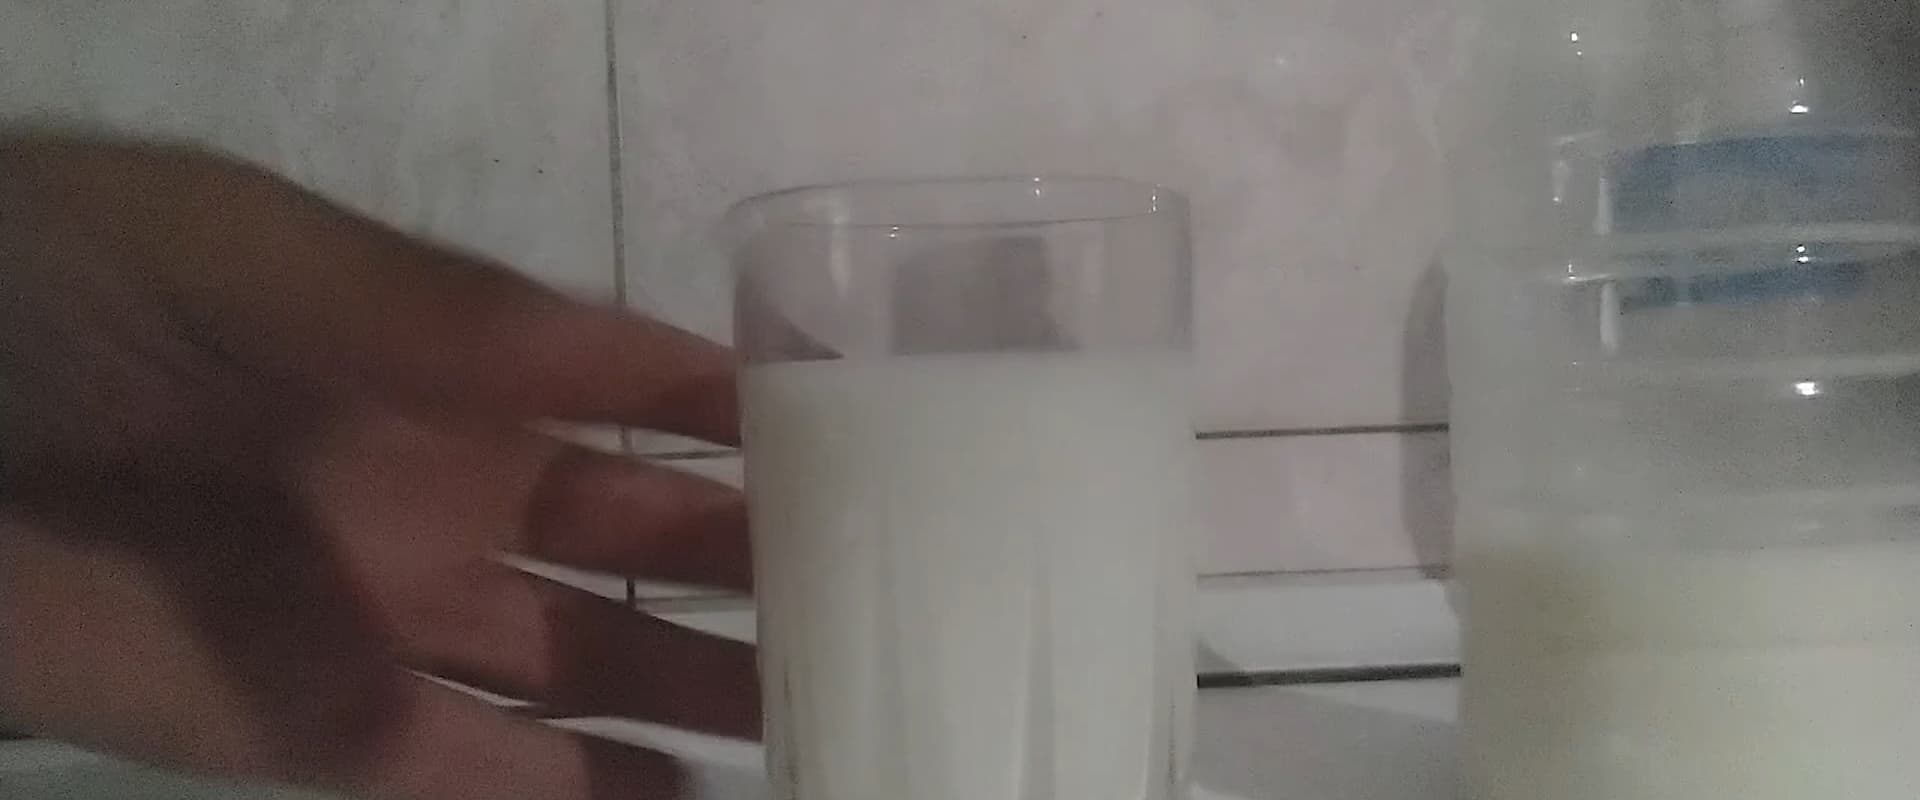 Drinkin' (Milk).